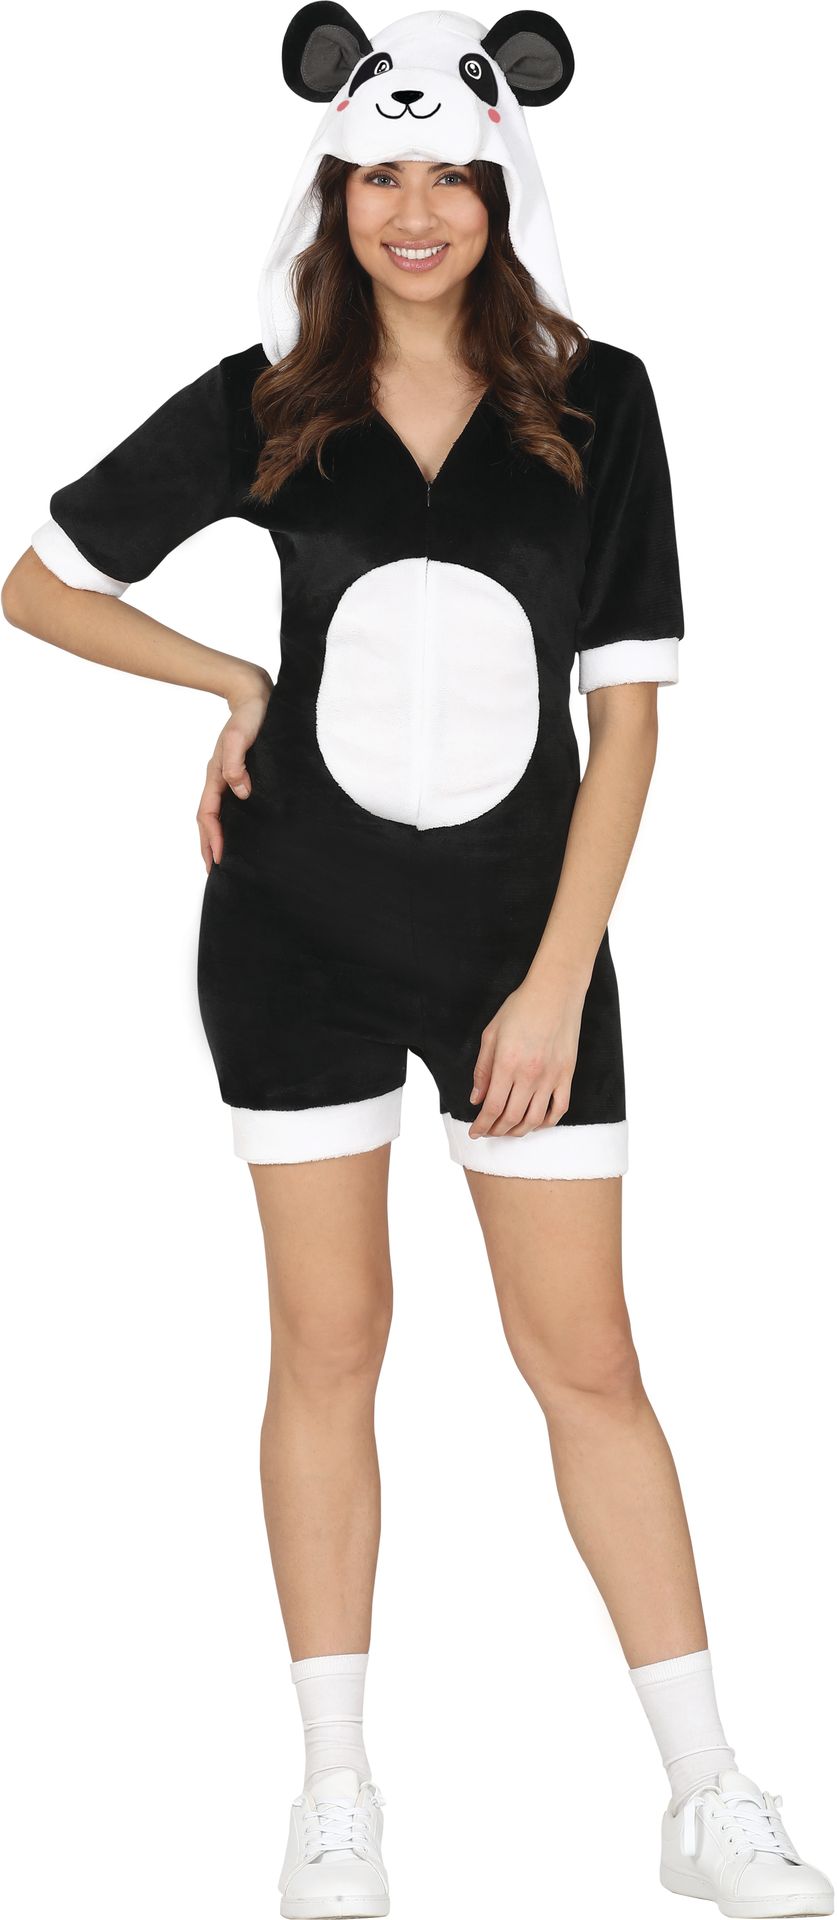 Panda jumpsuit outfit dames